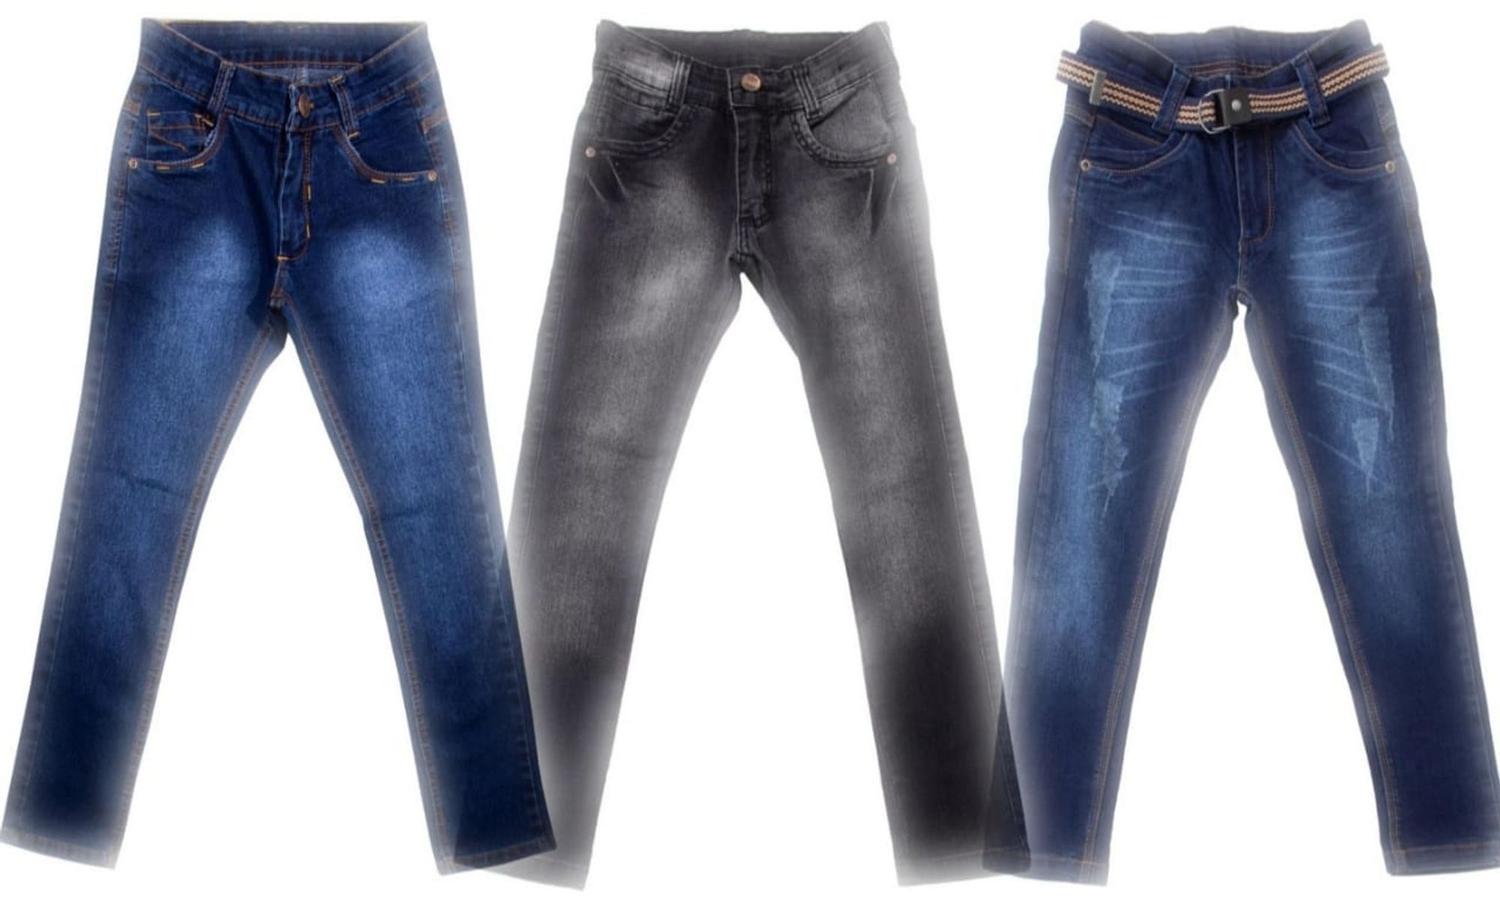 jaqueta jeans masculina juvenil